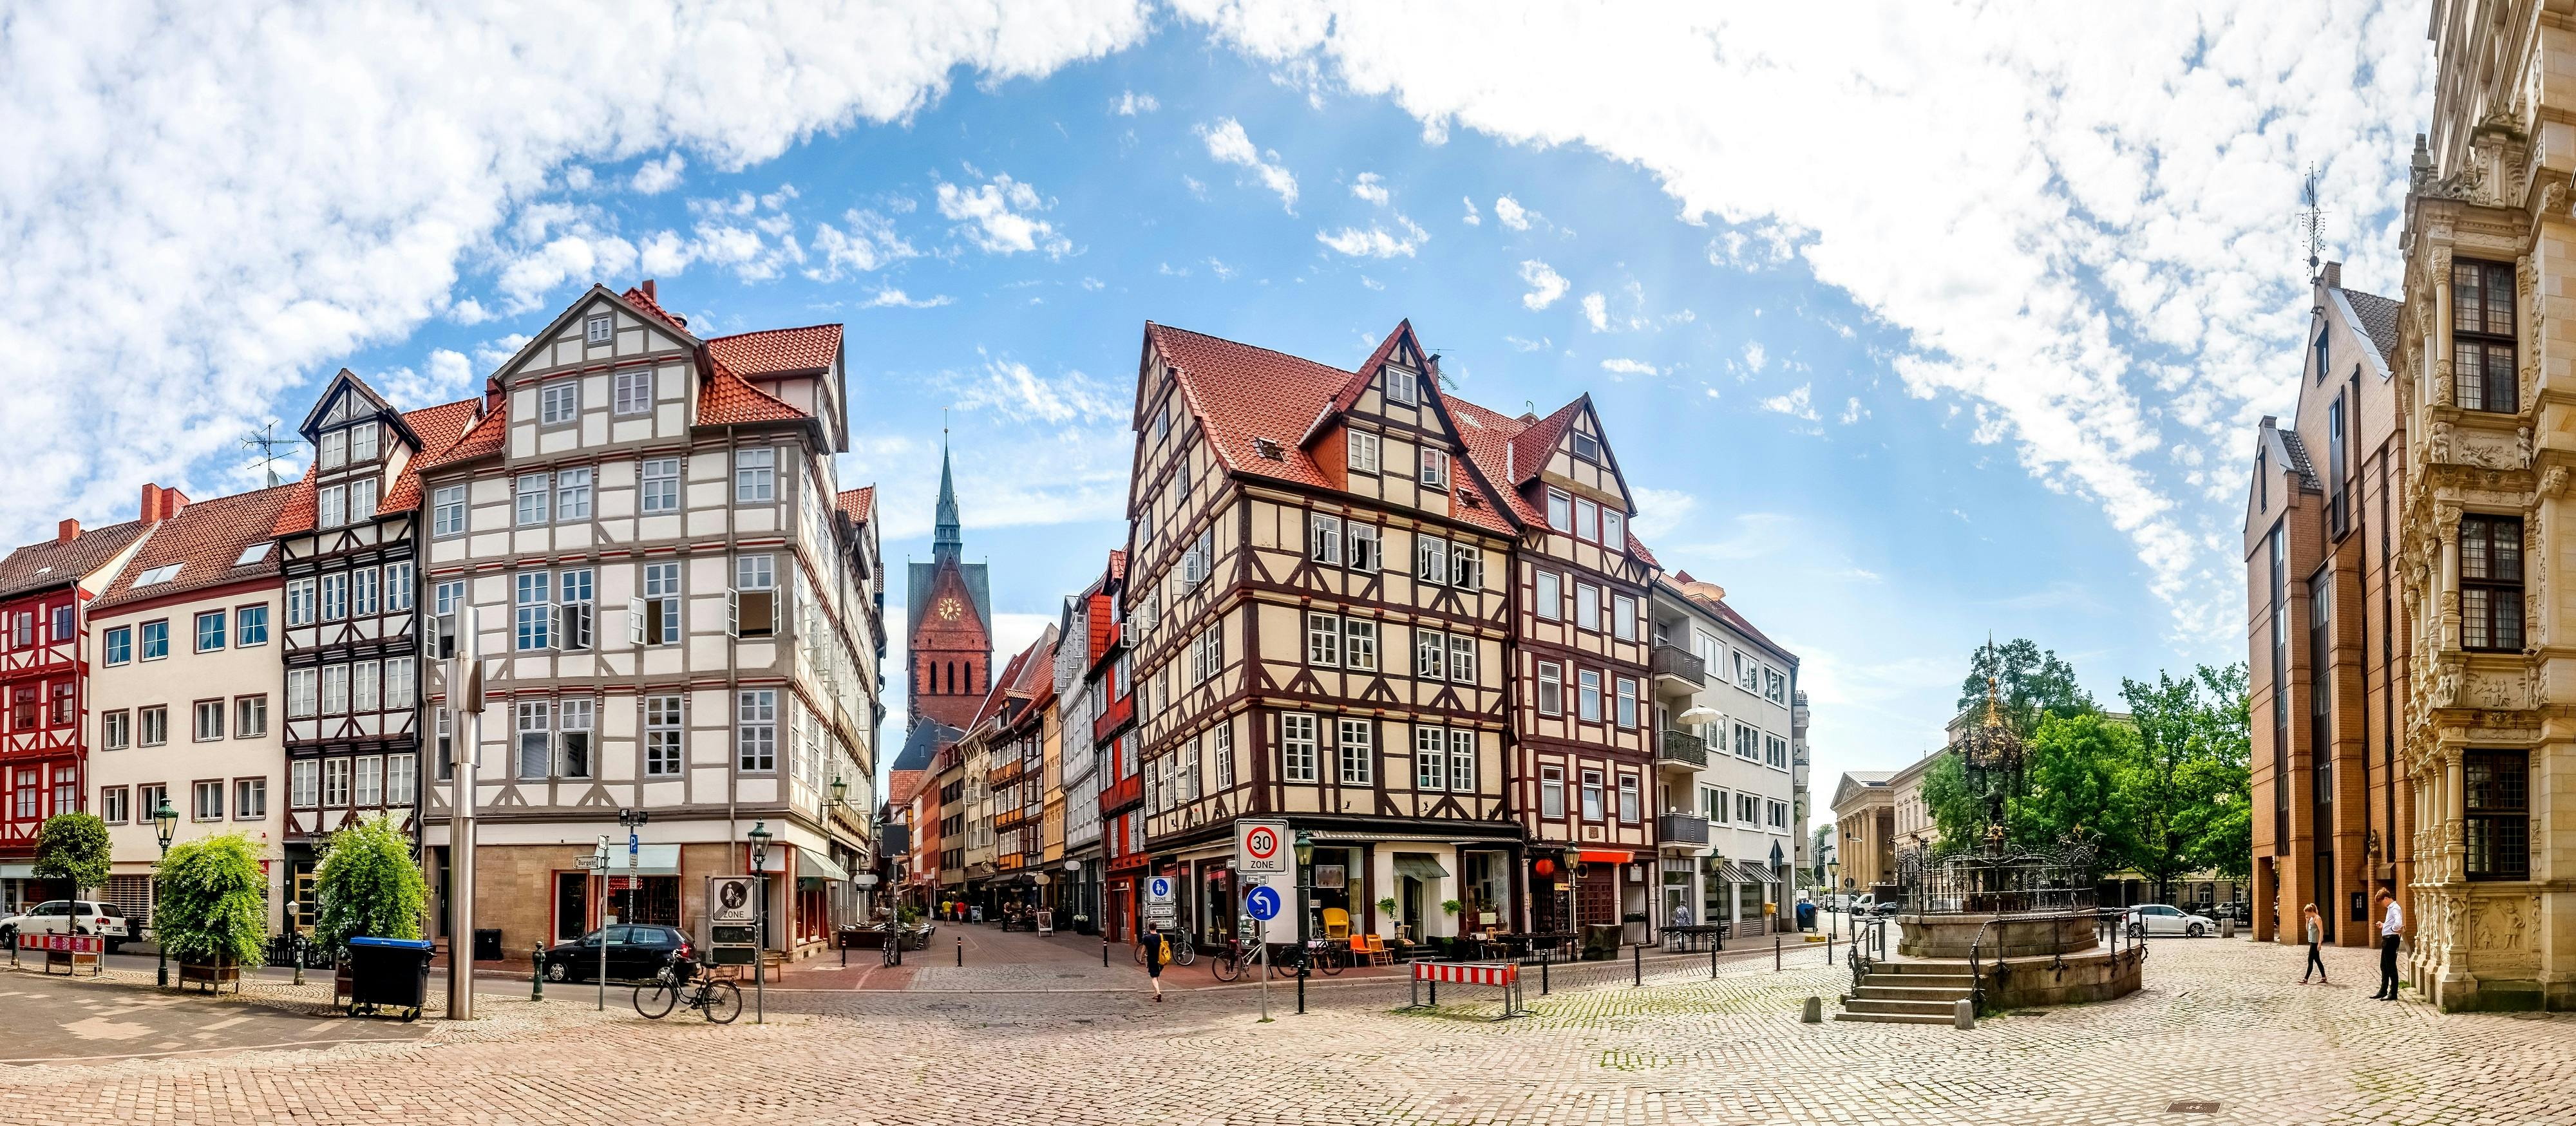 Escape Tour autoguiado, desafio interativo da cidade em Hanover